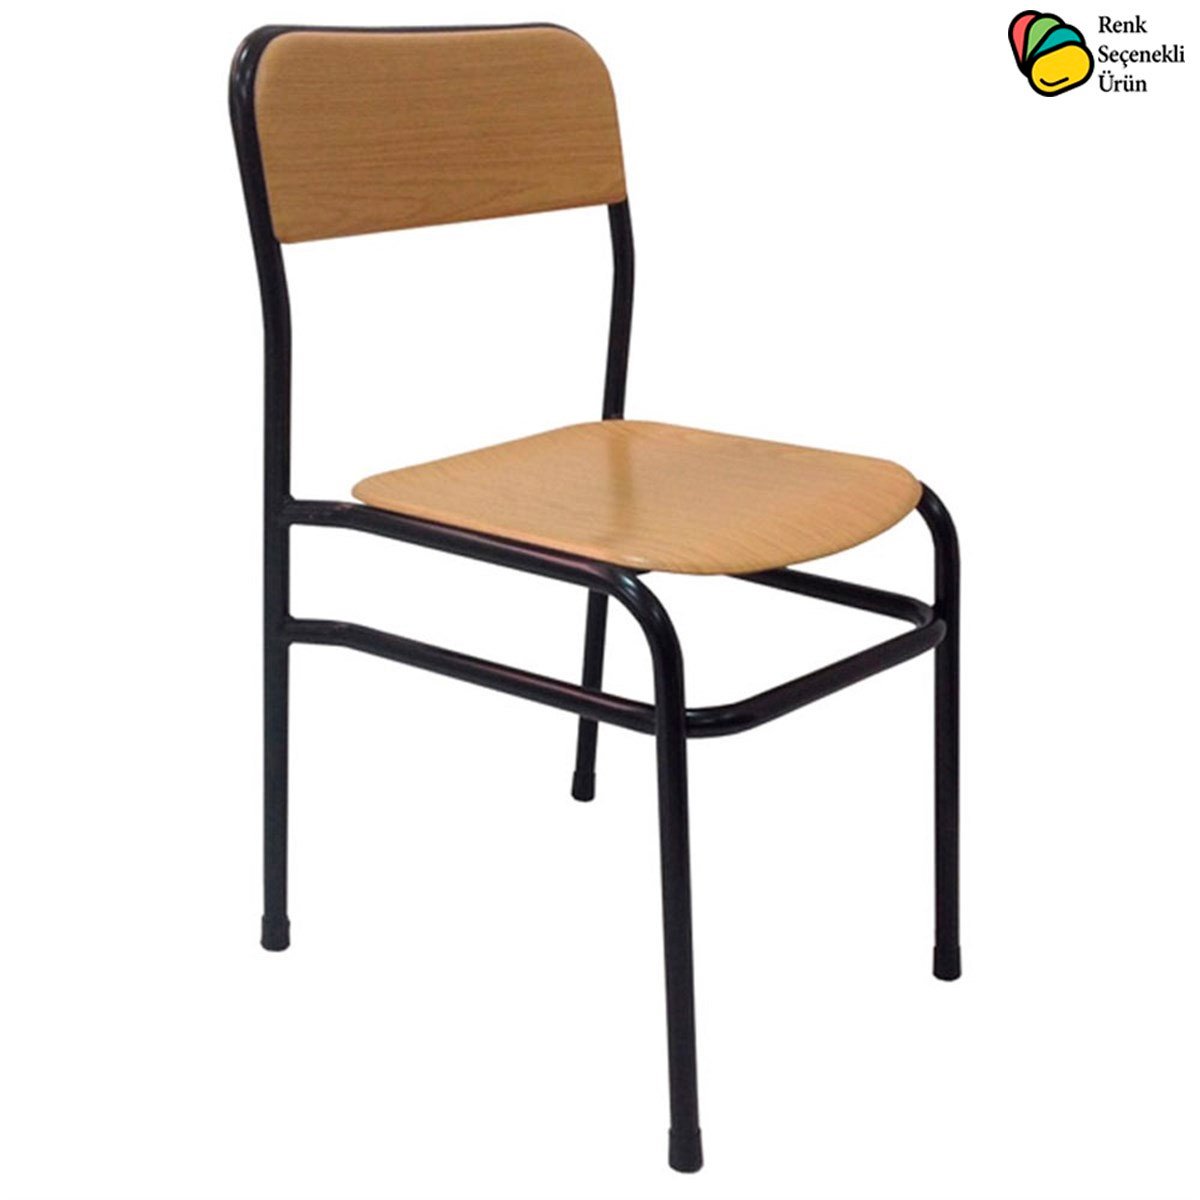 Takviyeli Werzalit Sandalye Modelleri ve Fiyatları Gentaş | Sasilla